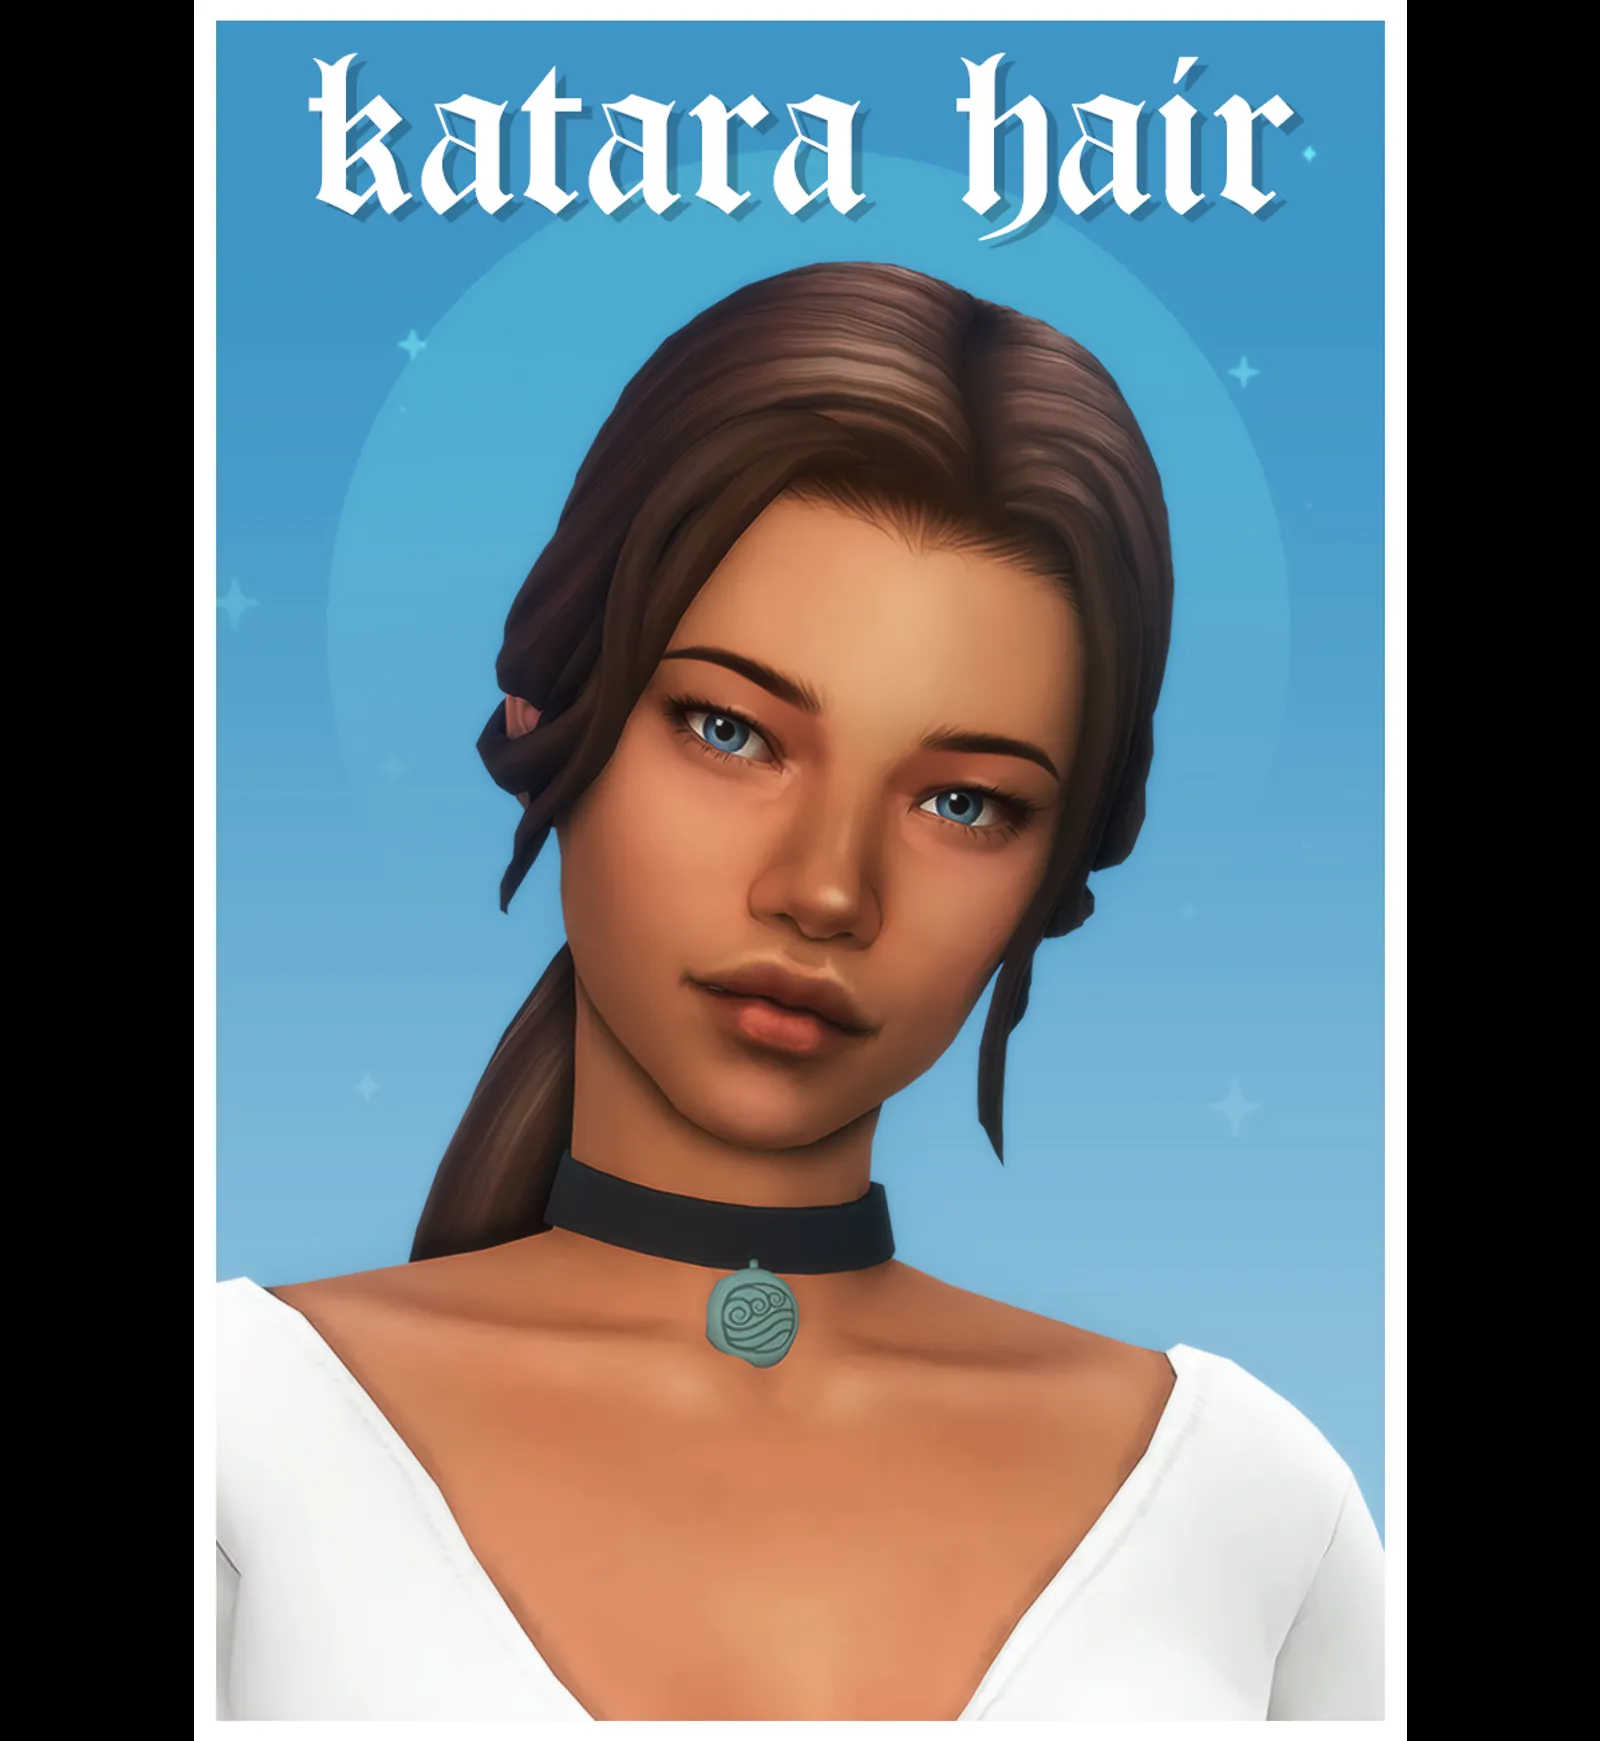 katara hair